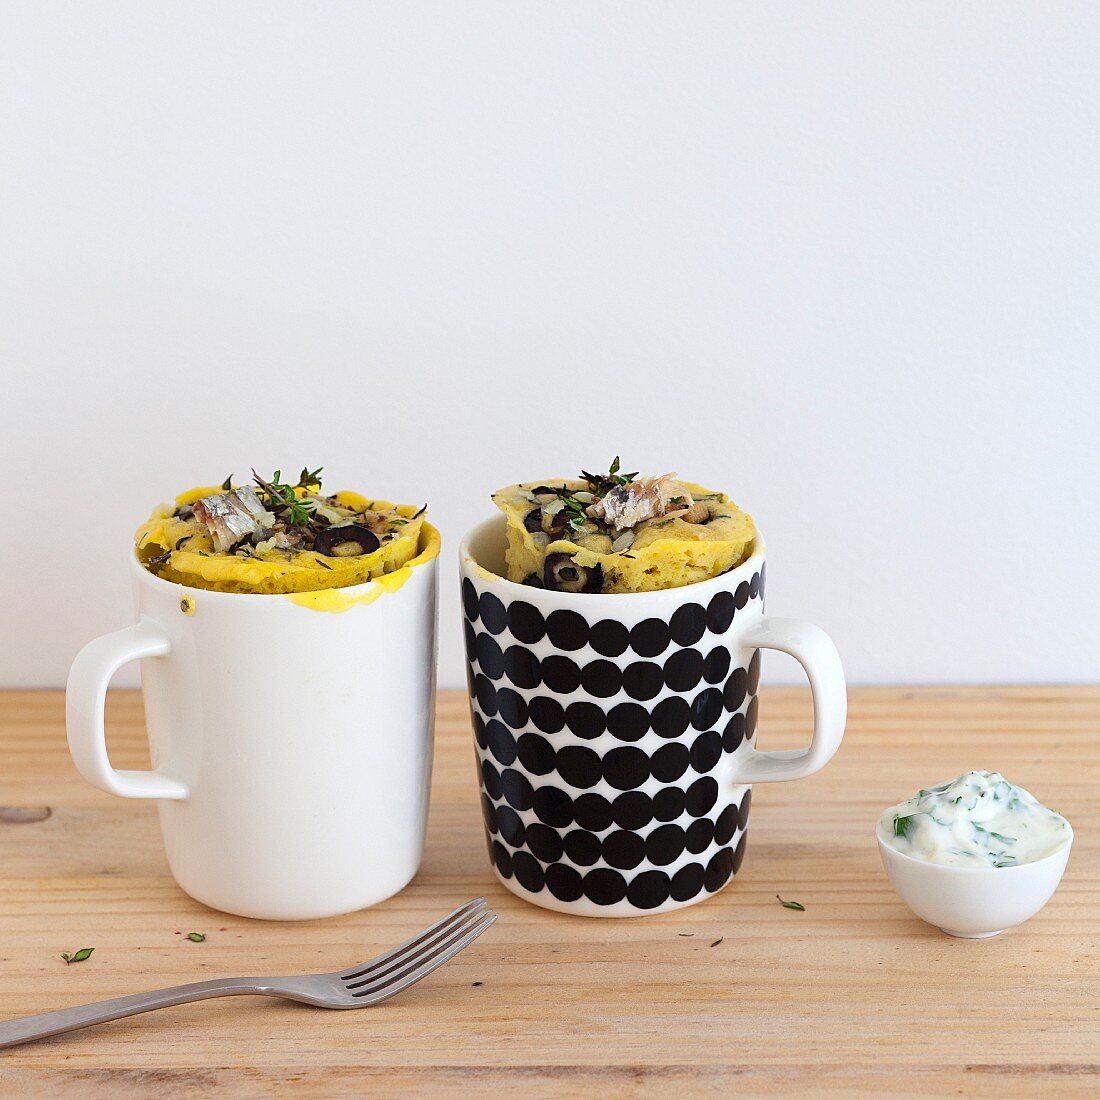 Savoury mug cakes with sardines, onion and olives